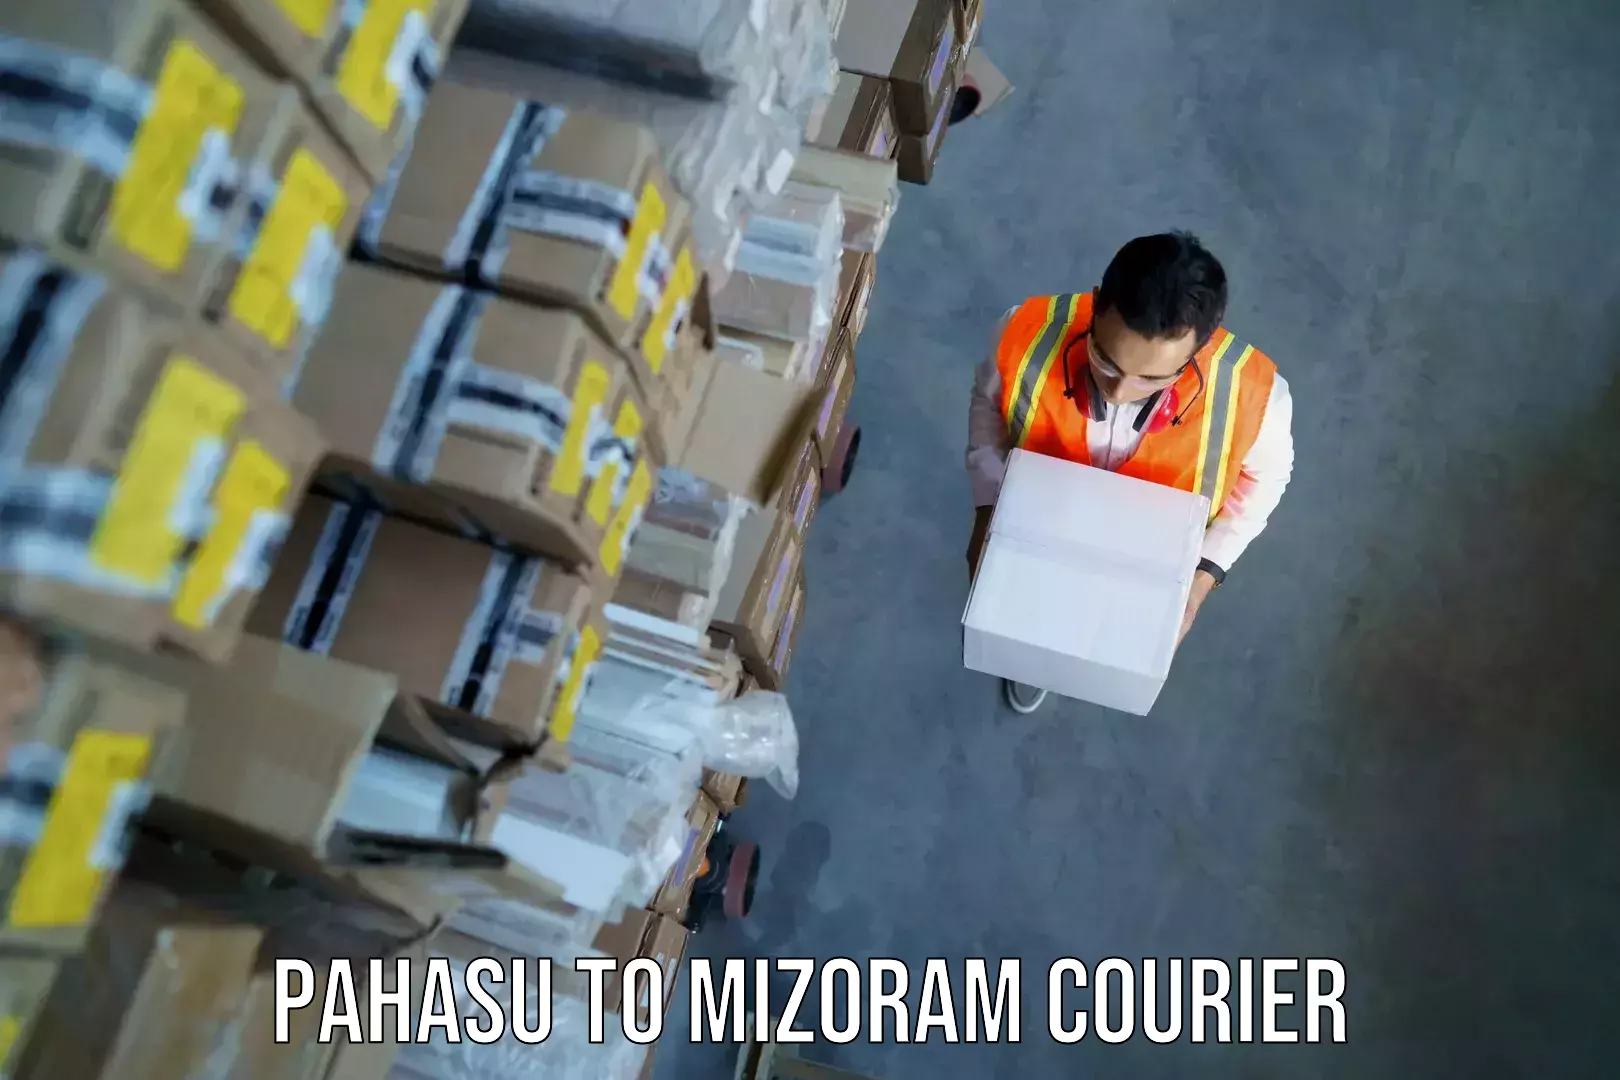 Baggage shipping service Pahasu to Mizoram